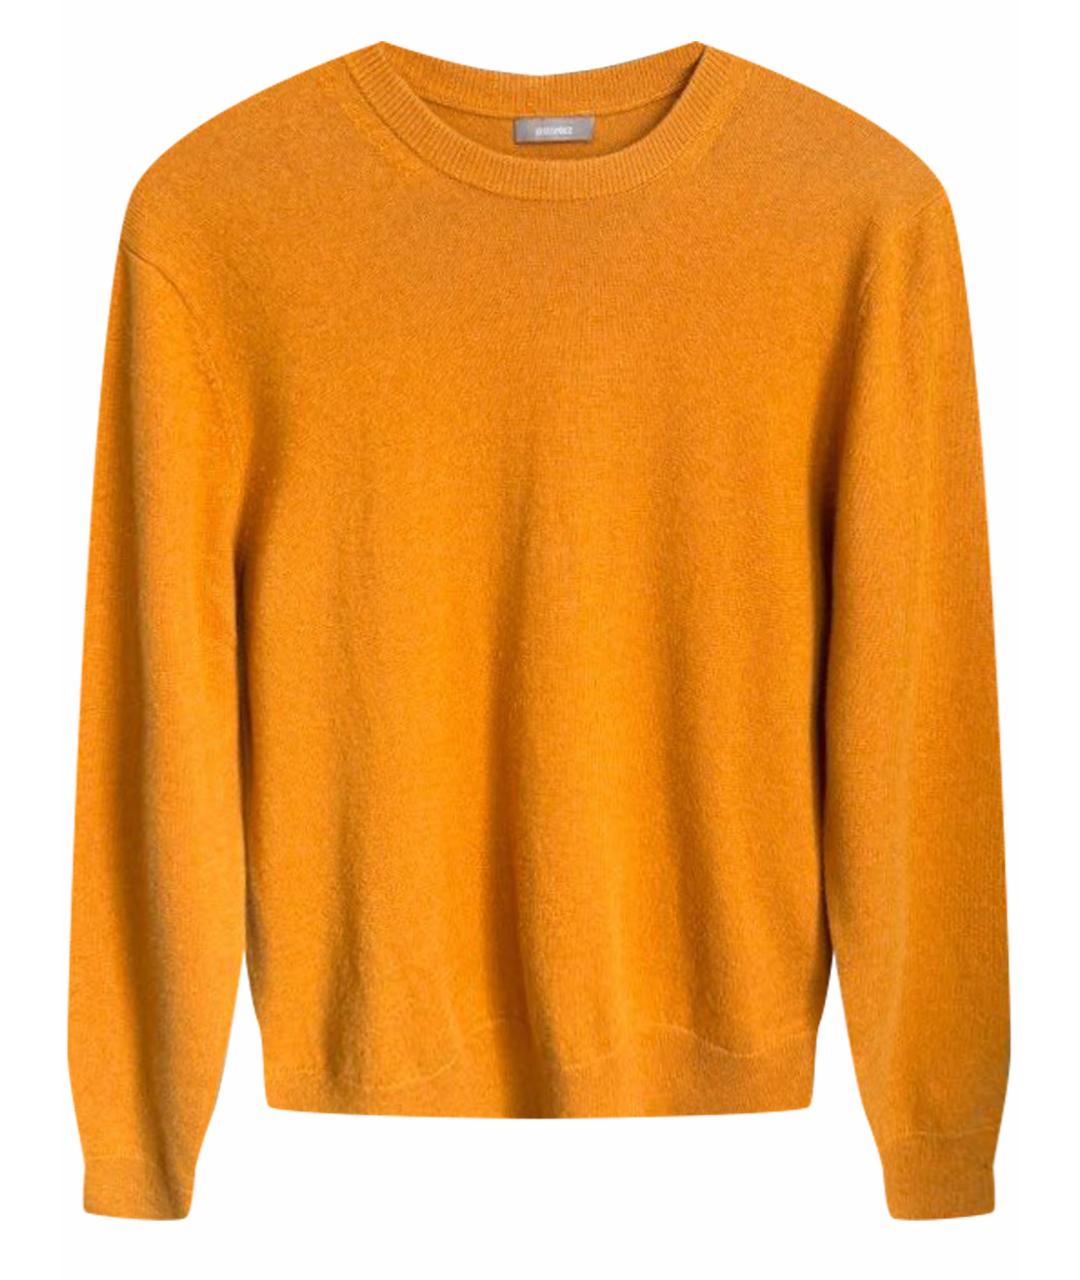 12 STOREEZ Оранжевый шерстяной джемпер / свитер, фото 1